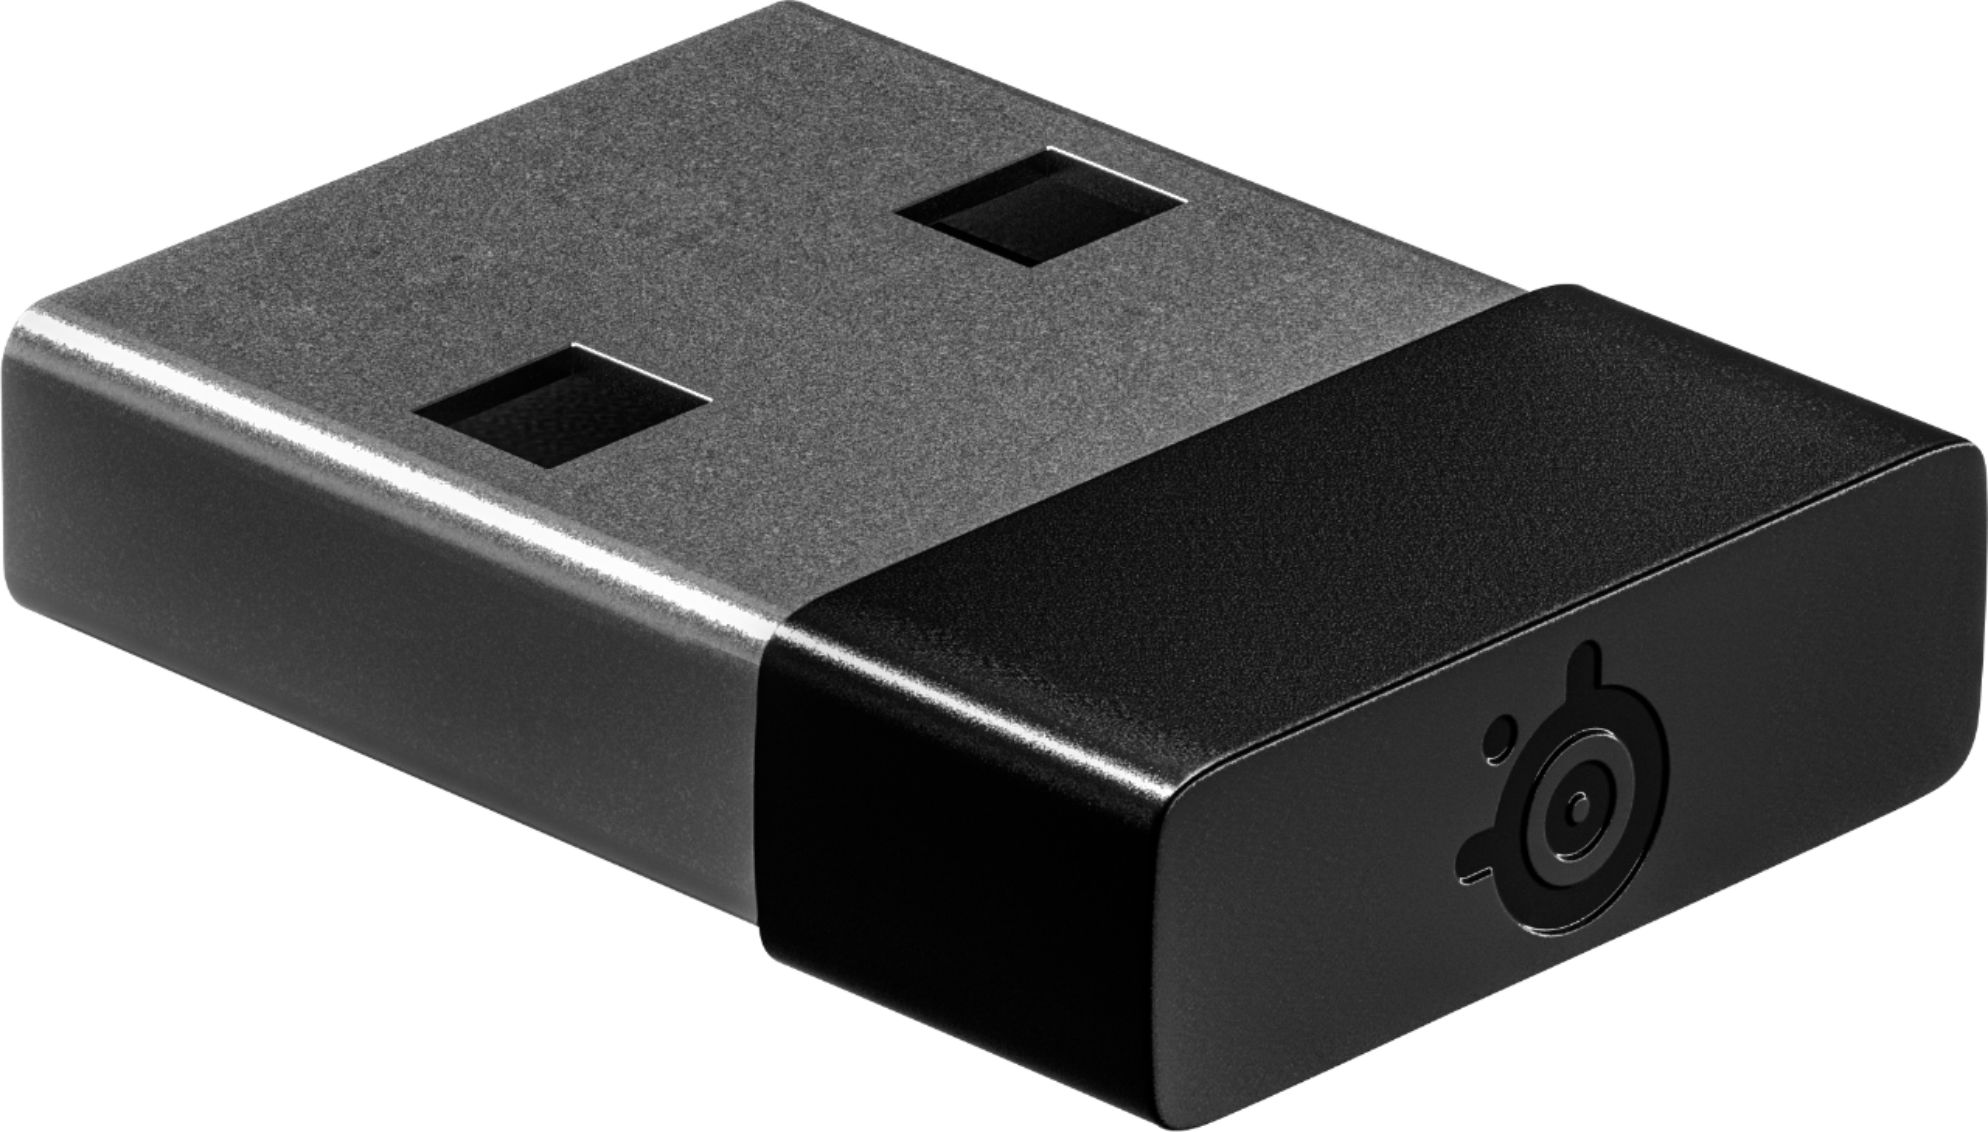 SteelSeries Rival 3 Wireless Gaming Mouse – Nerdie Lab